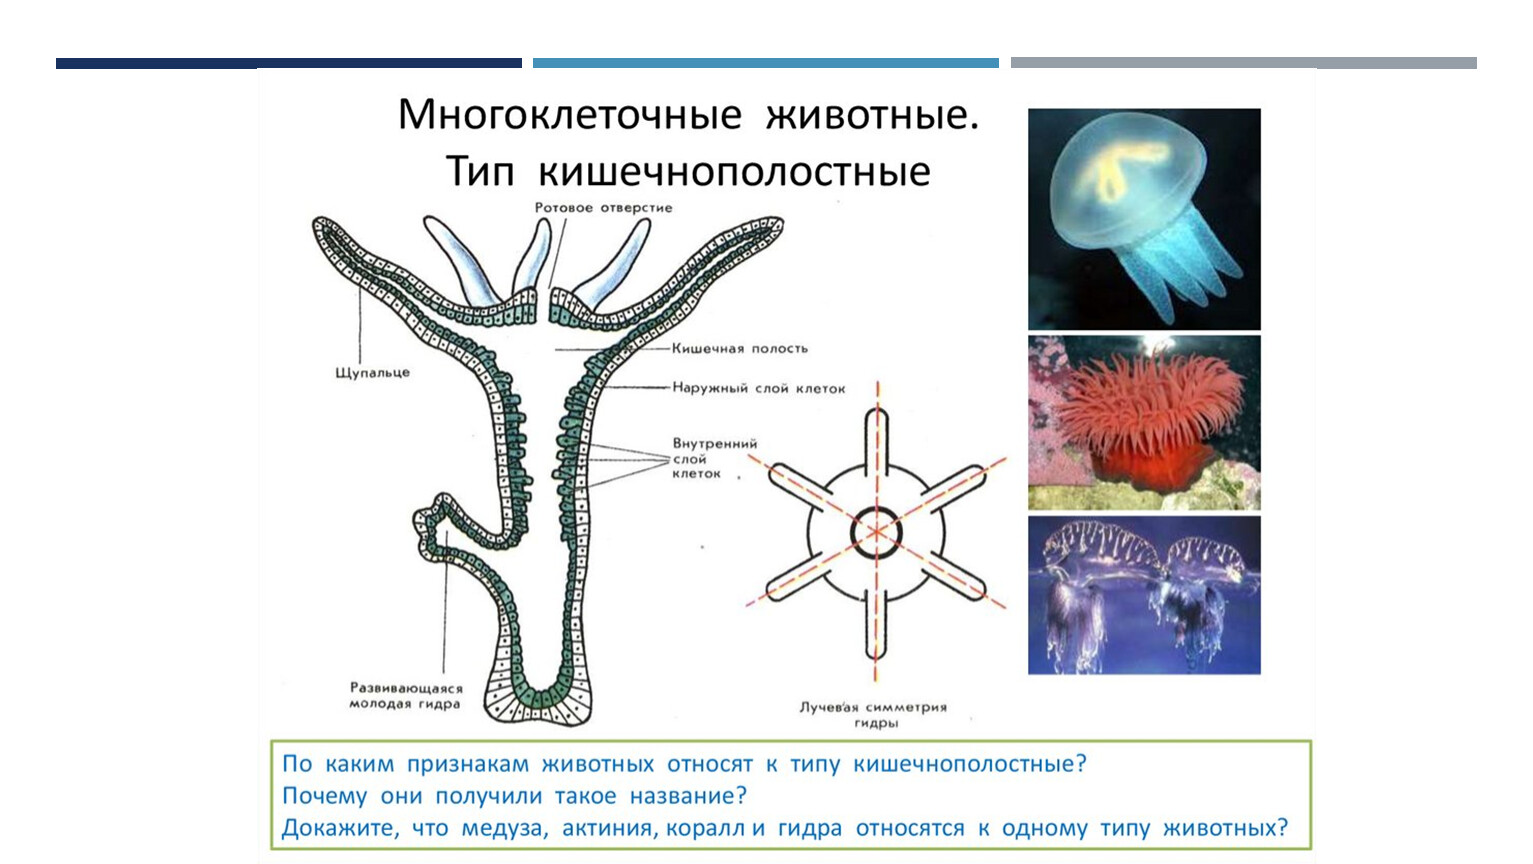 Особенности группы кишечнополостные. Кишечнополостные гидра медузы кораллы. Тип Кишечнополостные строение медузы. Многоклеточные животные Тип Кишечнополостные. Гидроидные Сцифоидные коралловые полипы.